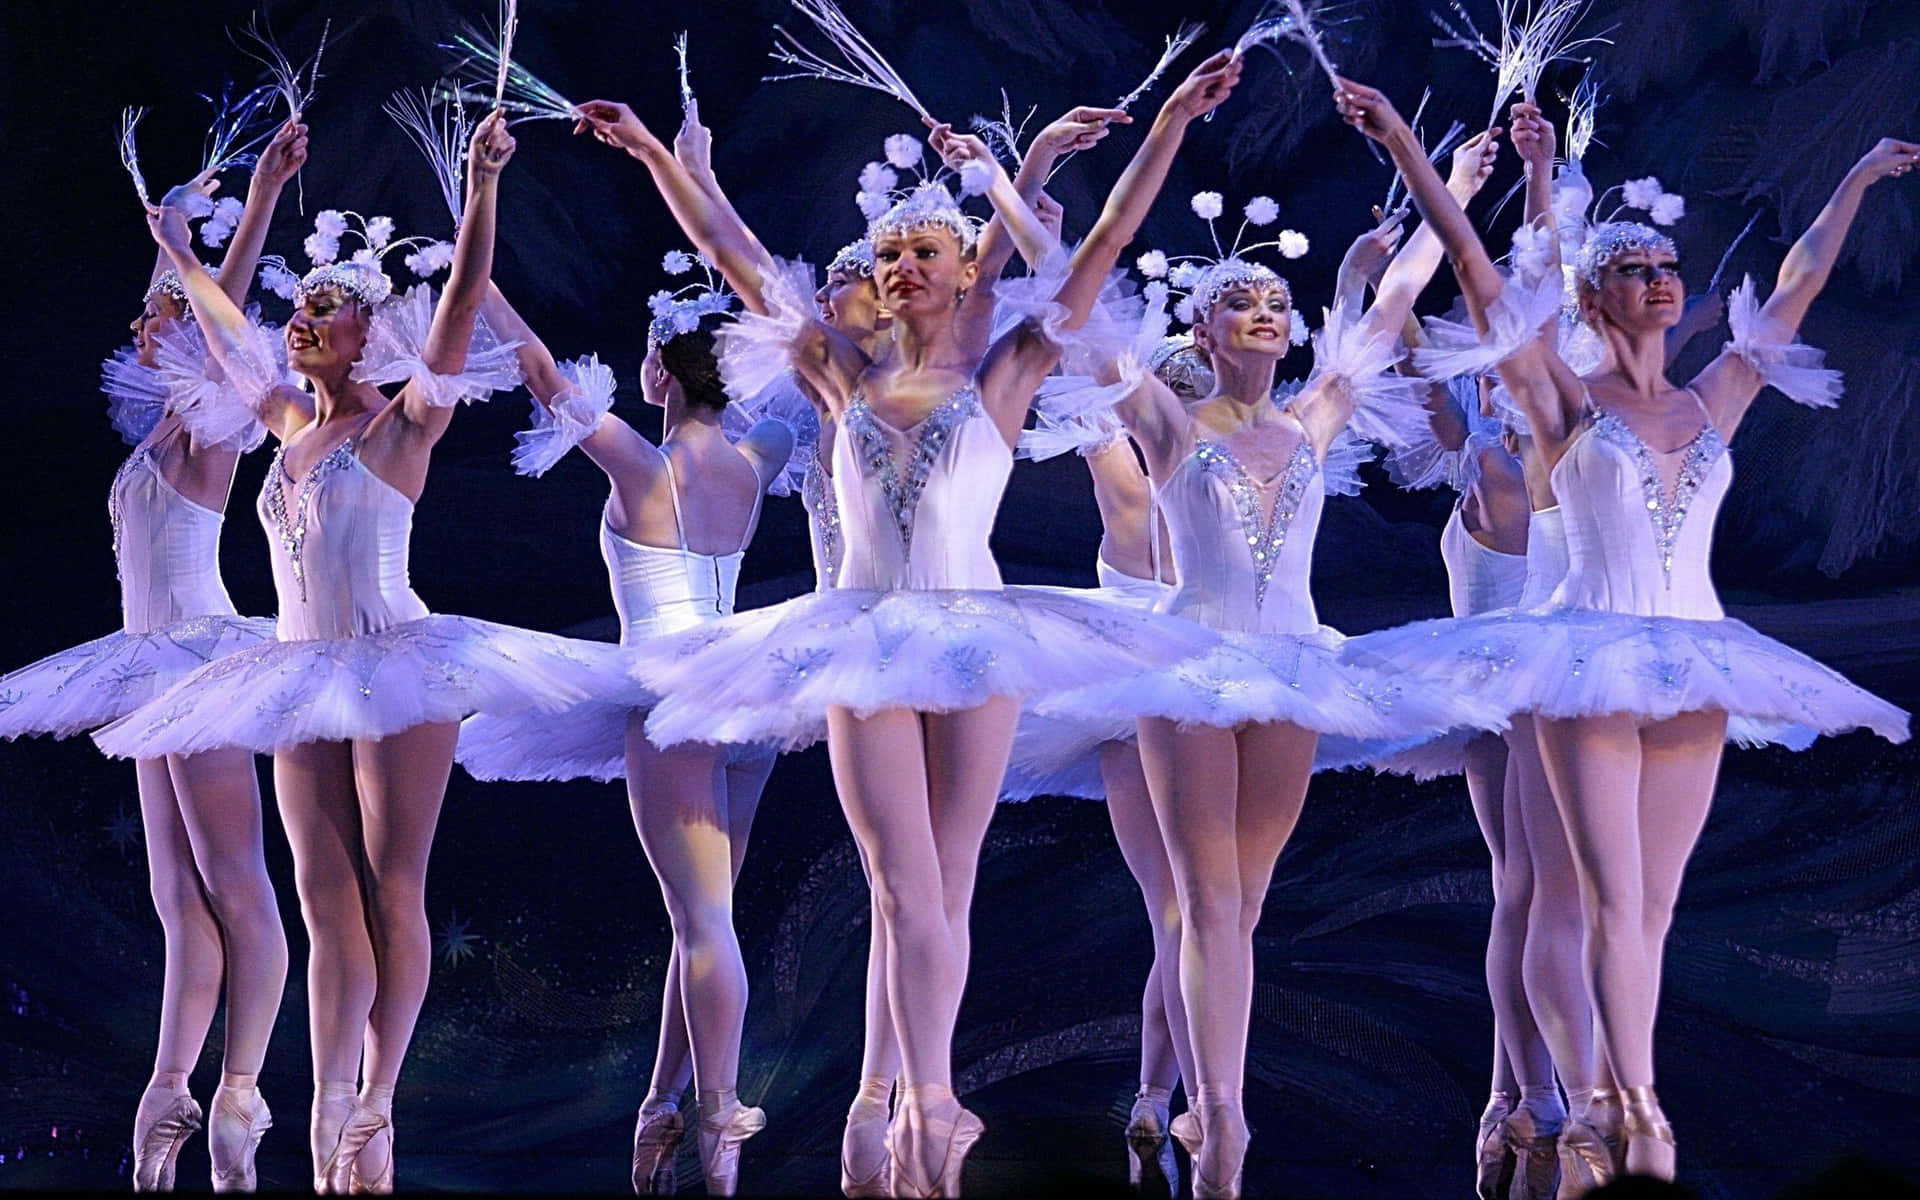 A graceful ballet dancer stands center stage.